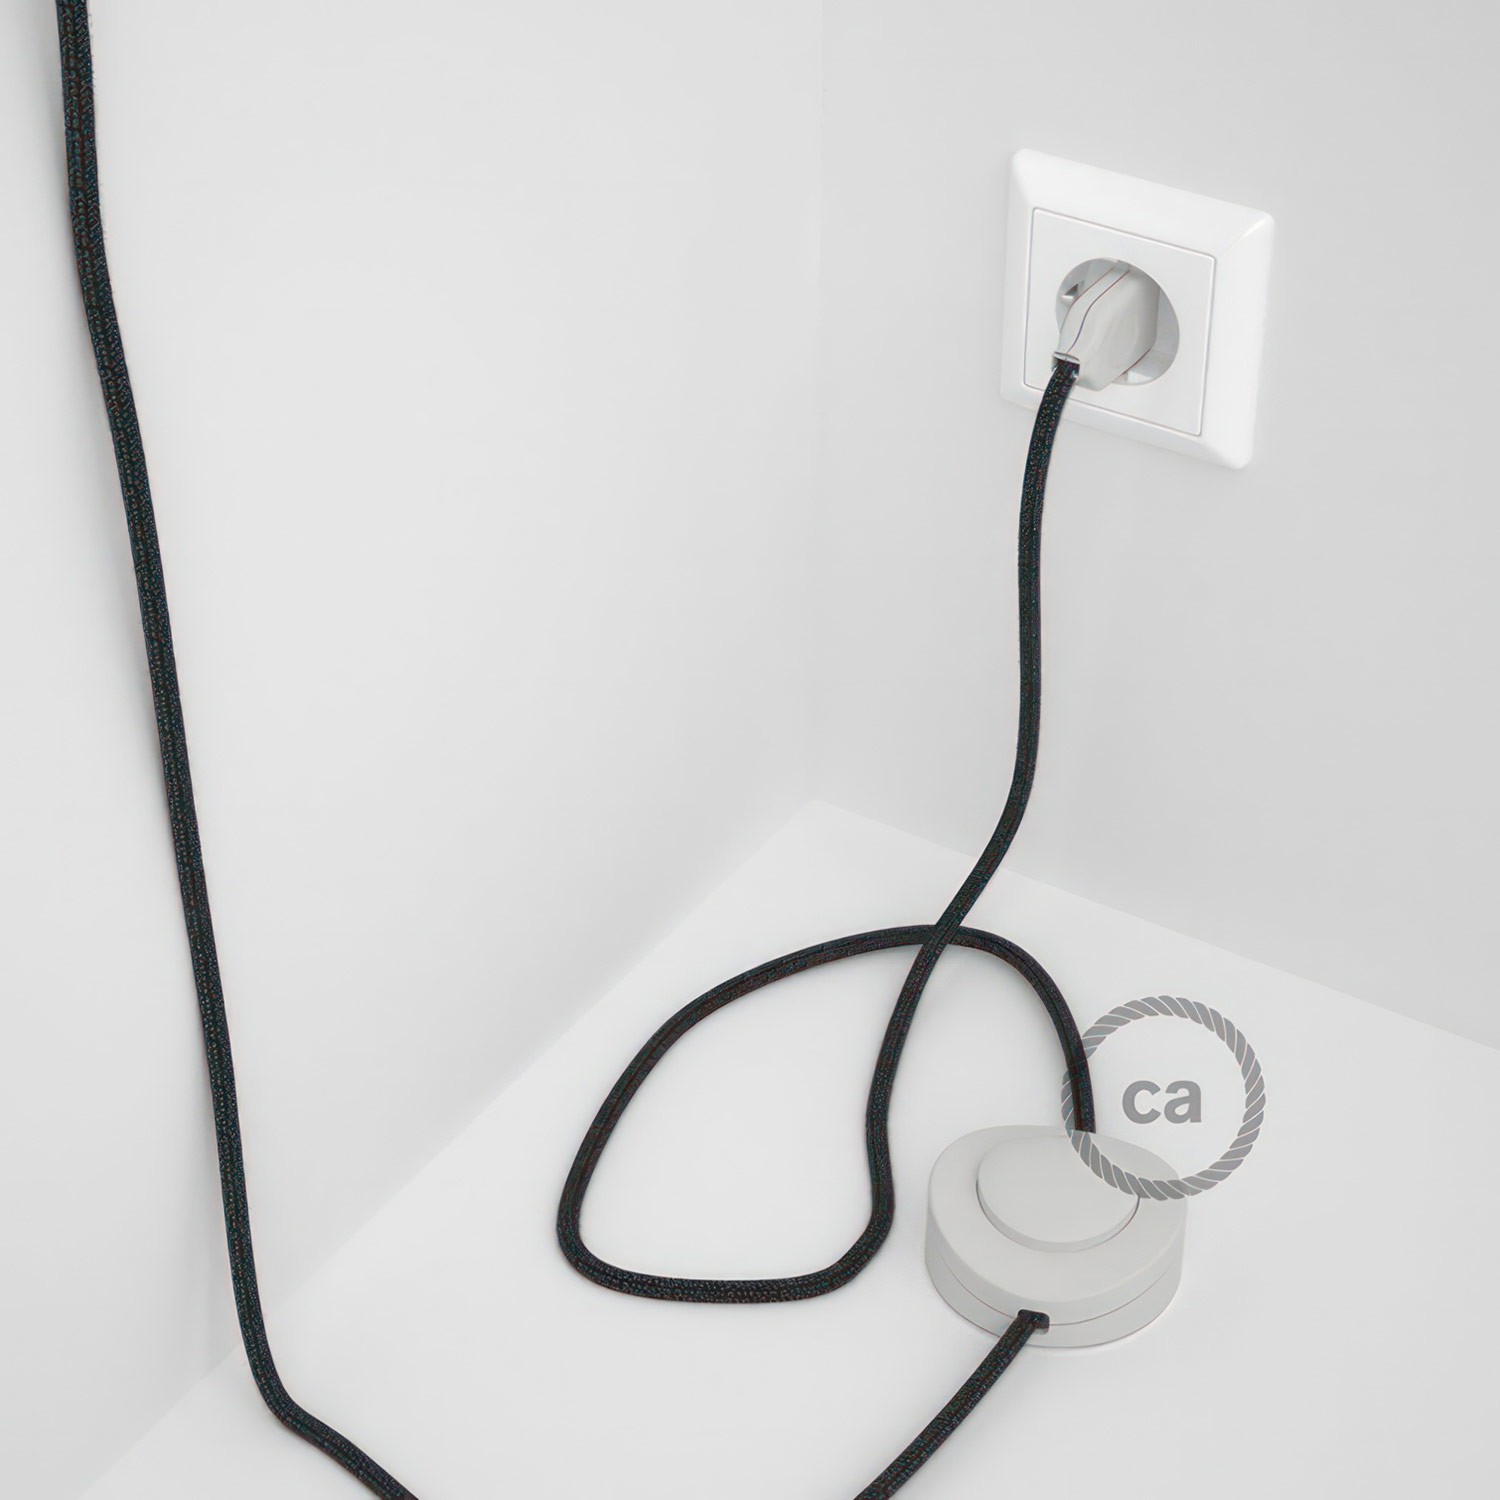 Cableado para lámpara de pie, cable RN03 Lino Natural Antracita 3 m. Elige tu el color de la clavija y del interruptor!